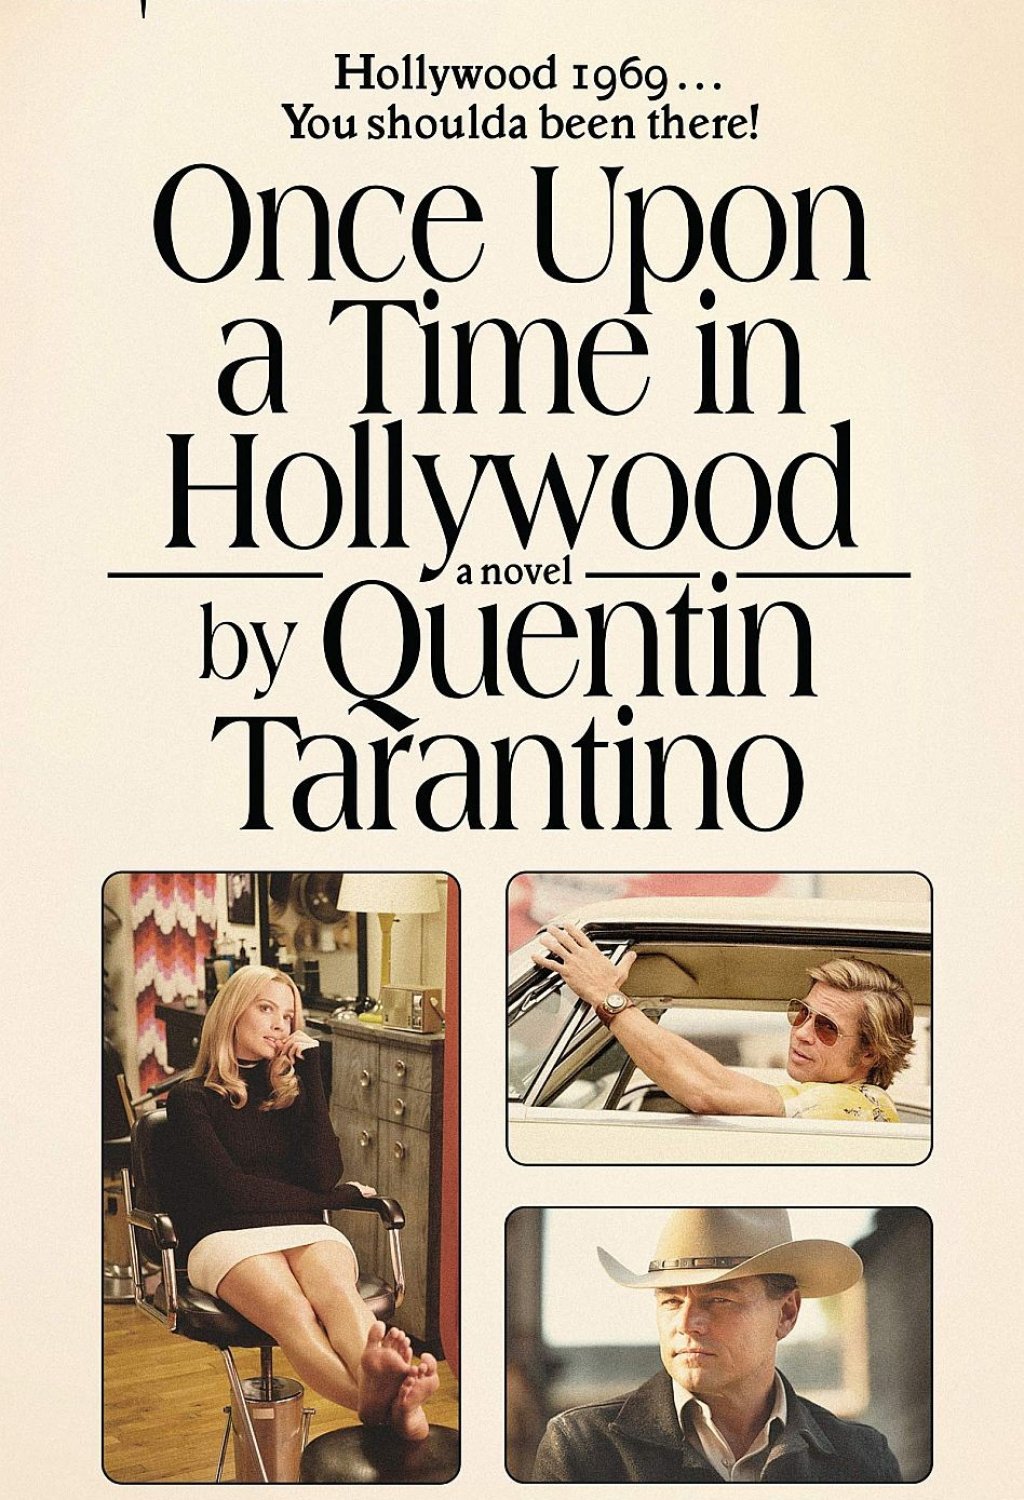 "Once upon a time in Hollywood" от Куентин Тарантино
В този случай филмът се превръща в книга, макар за момента и само на английски. Тарантино прави първите си стъпки като писател, адаптирайки сценария на "Имало едно време в Холивуд" като роман, проследяващ същите 2 дни от 1969 г. като филма, но с множество добавени сцени и много детайли за животите на главните герои - преди и след събитията, показани на екран. 

Какво се случва с кариерата на Рик Долтън, изигран от Лео Ди Каприо? Убил ли е Клиф (Брад Пит) жена си? Как Шарън Тейт е пробила в Холивуд? Отговорите на тези въпроси са на страниците на новелизацията на Once Upon a Time in Hollywood, наблъскана и с много разсъждения върху киното и телевизията в САЩ в края на 60-те. Четиво само за фенове на Тарантино и то тези, харесали последния му за момента филм.